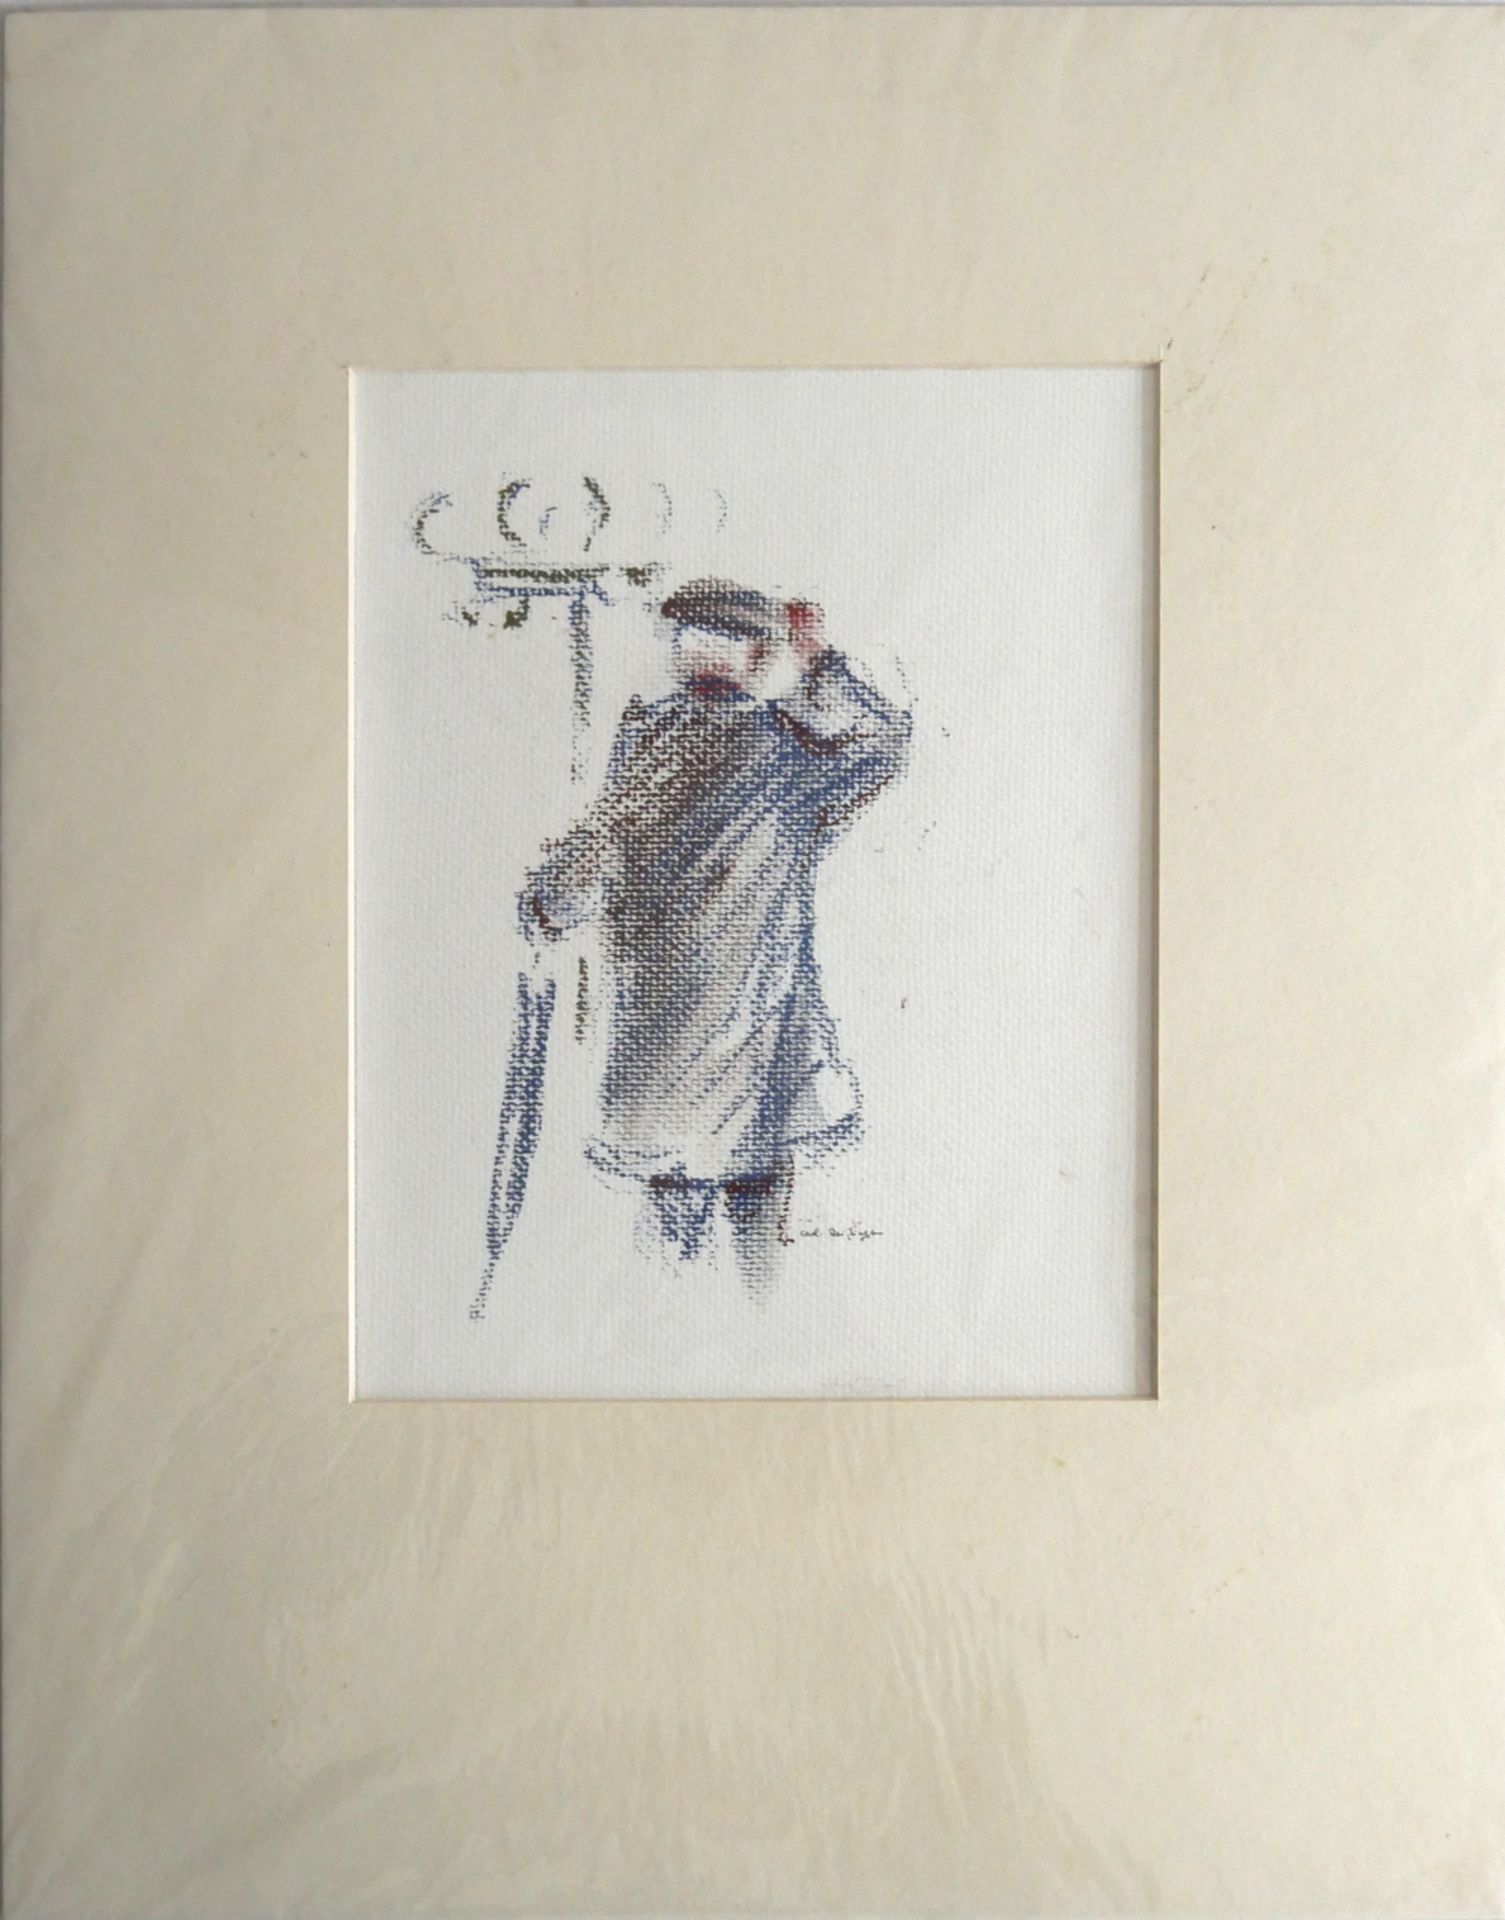 Farb-Zeichnung " Im Aufbruch" , Signatur unten mittig Carl Reißinger, Maße: Breite ca. 21,5 cm und